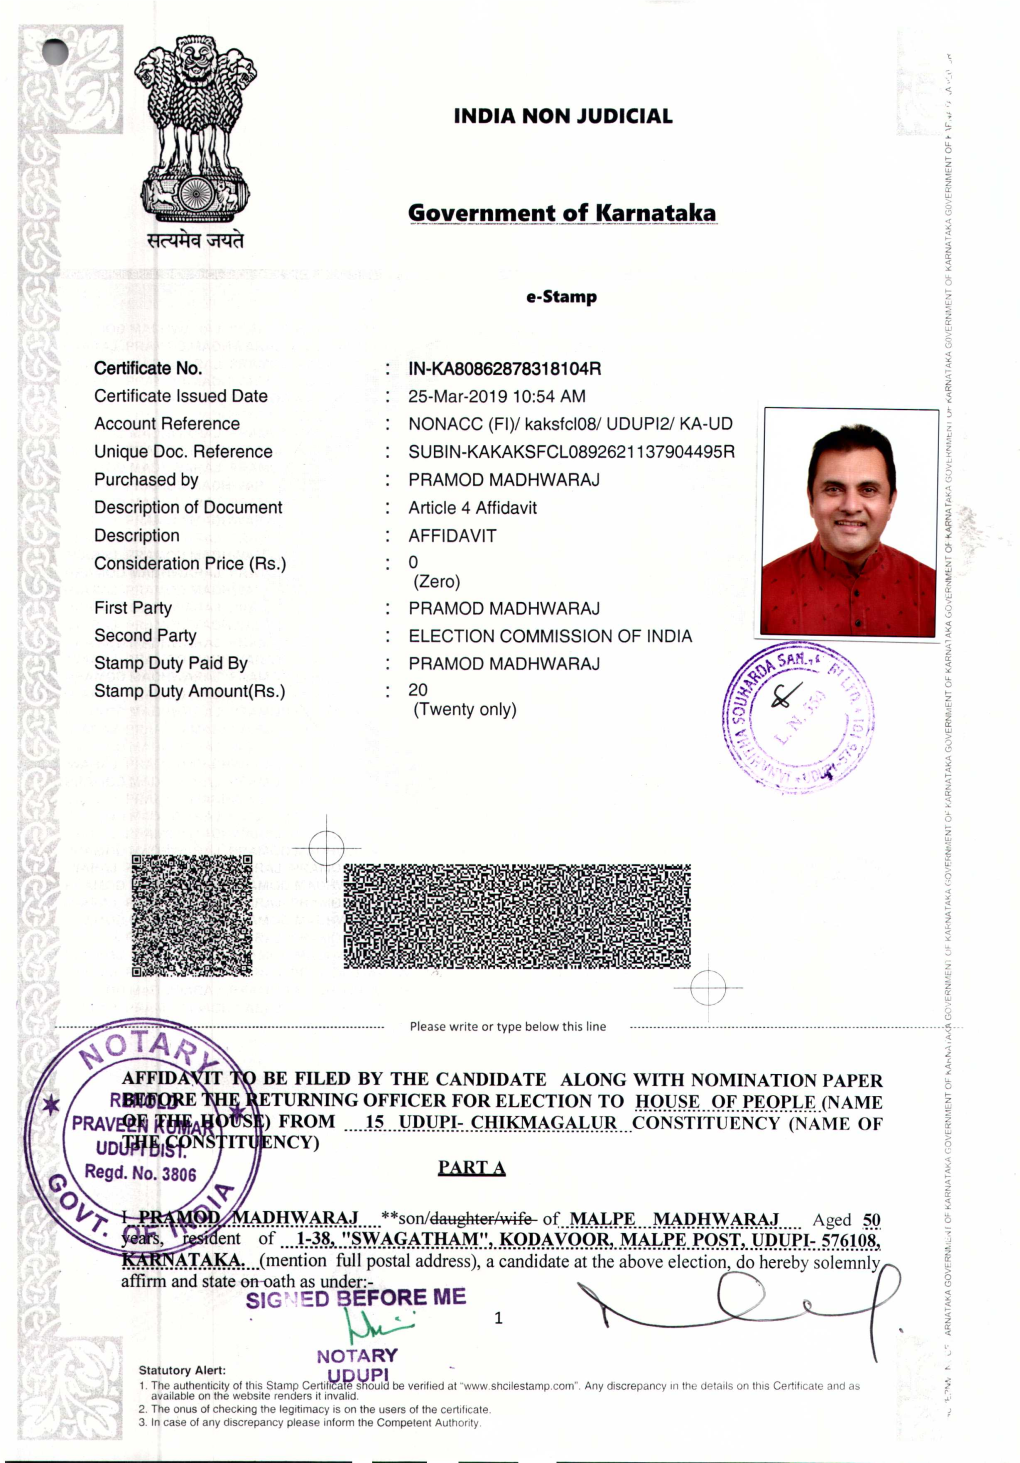 INDIA NON JUDICIAL E-Stamp